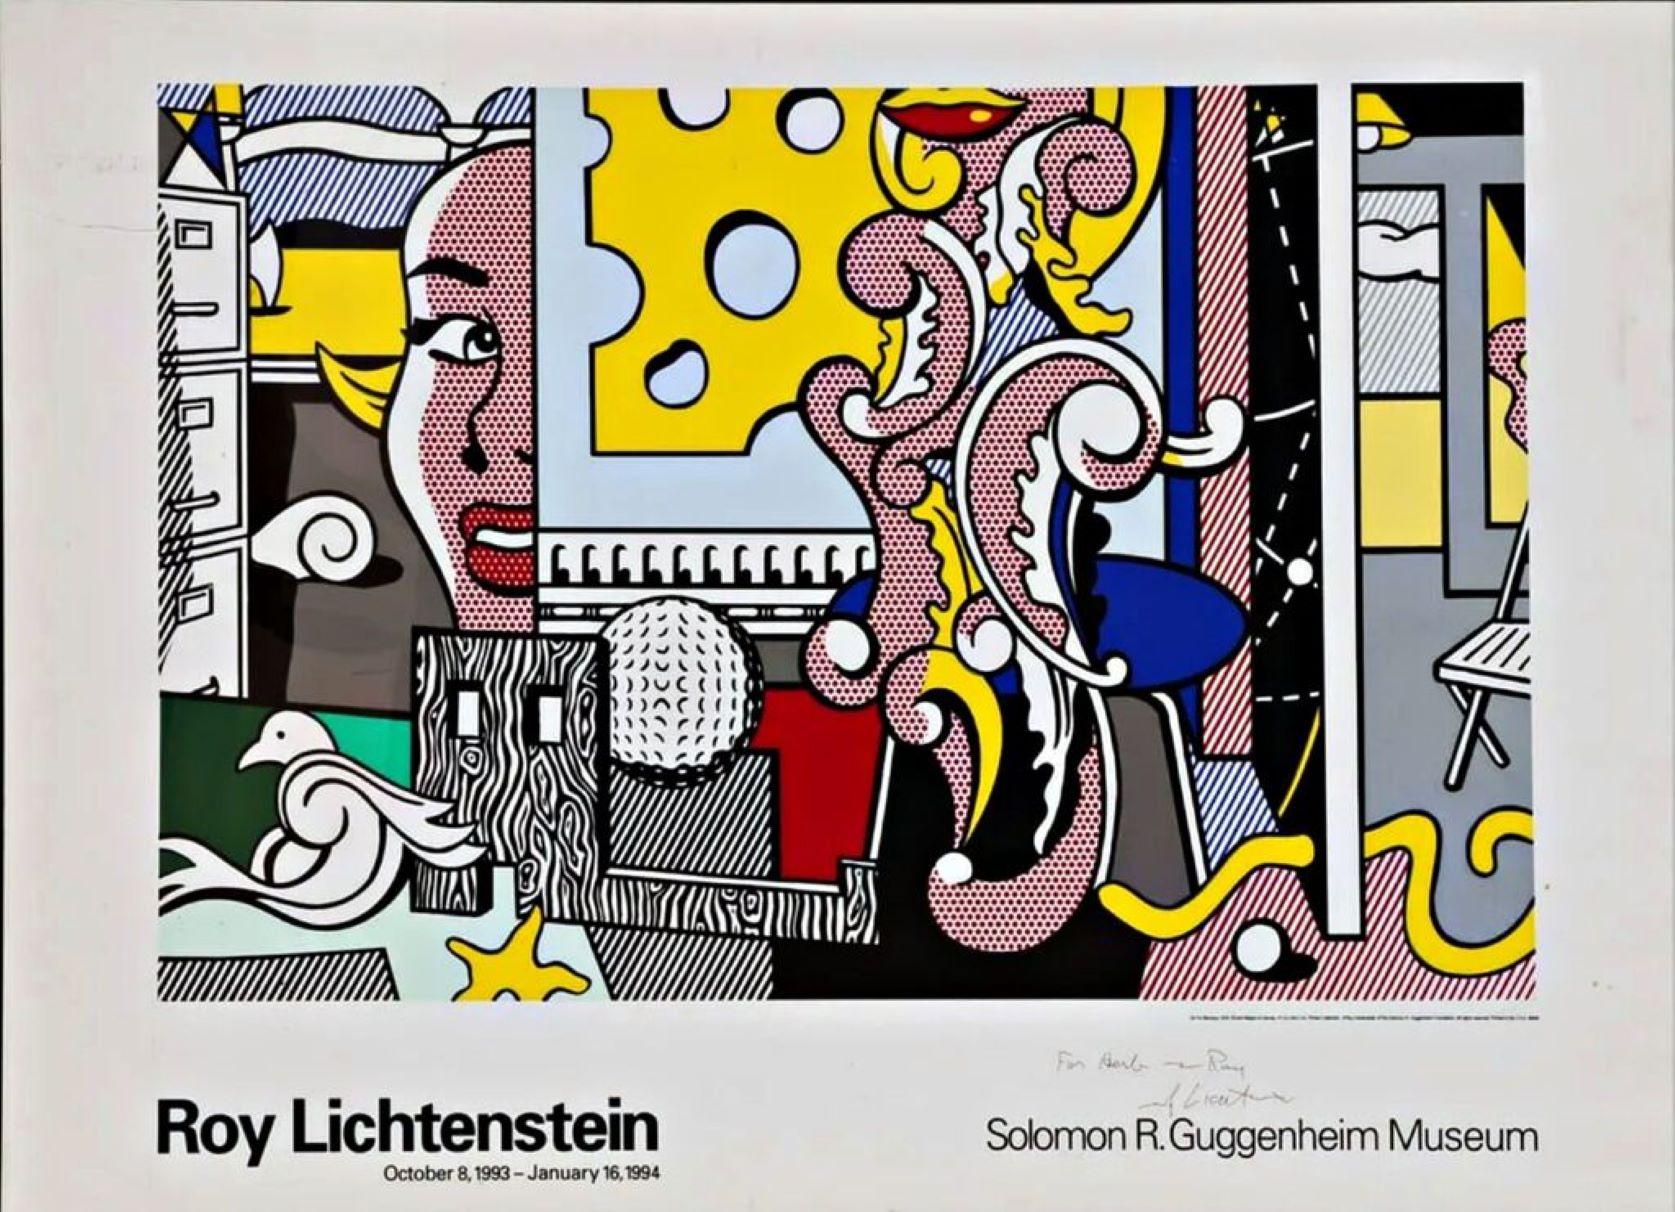 Roy Lichtenstein
Affiche "Go for Baroque" (signée et inscrite à la main par Roy Lichtenstein), 1994
Lithographie offset en couleurs sur papier vélin (signée à la main et portant une inscription à l'attention de l'avocat de la succession de